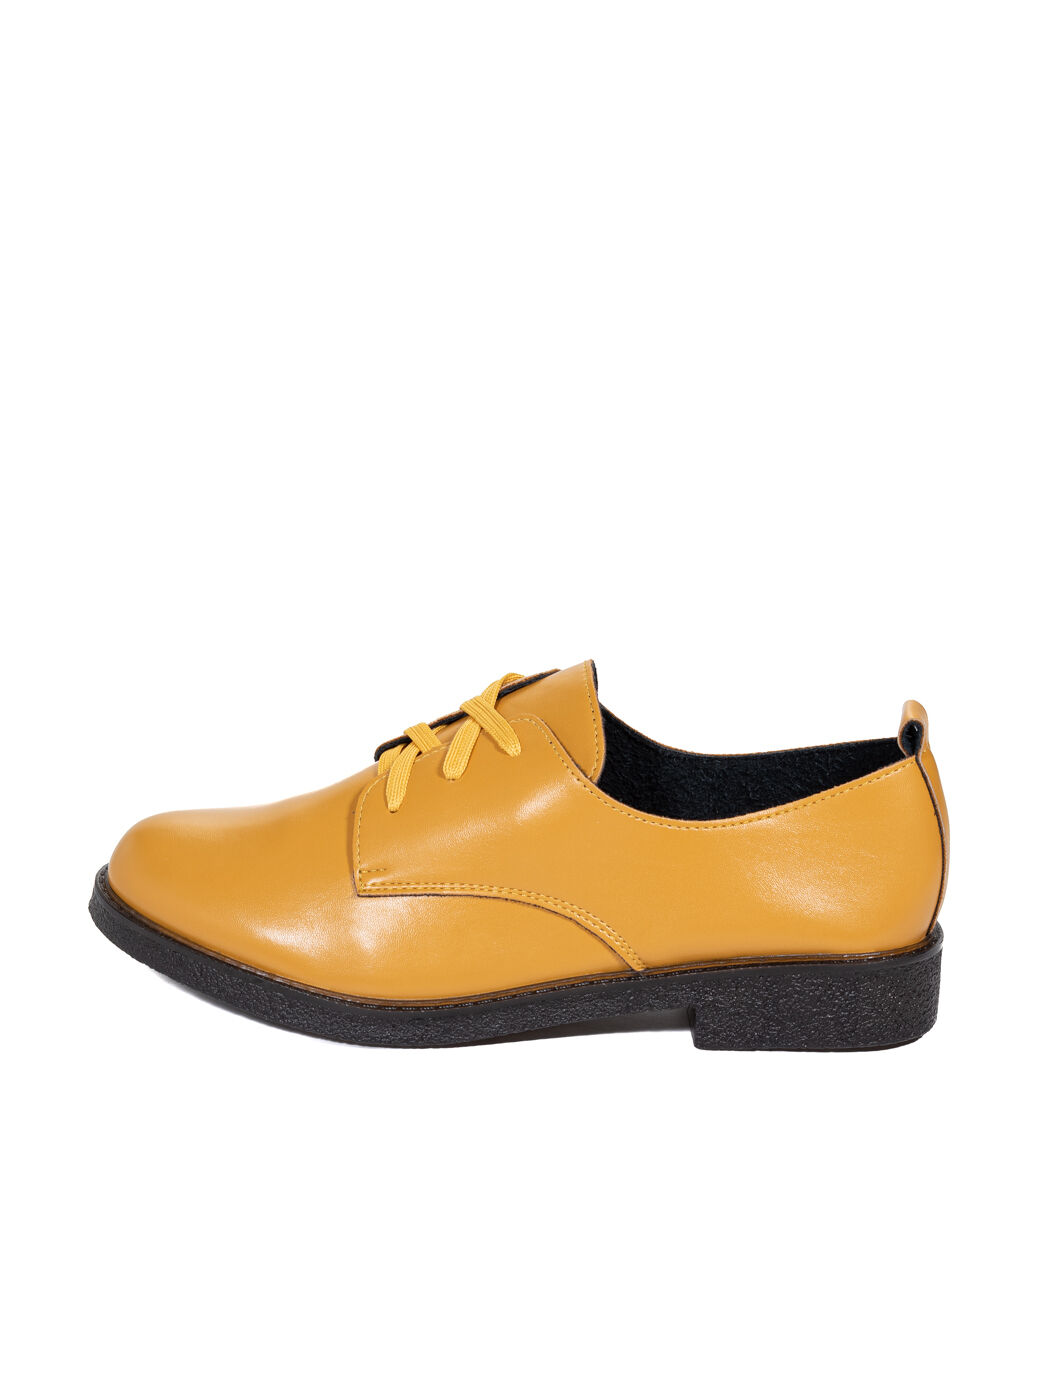 Туфли Oxfords женские жёлтые экокожа каблук устойчивый демисезон 3M